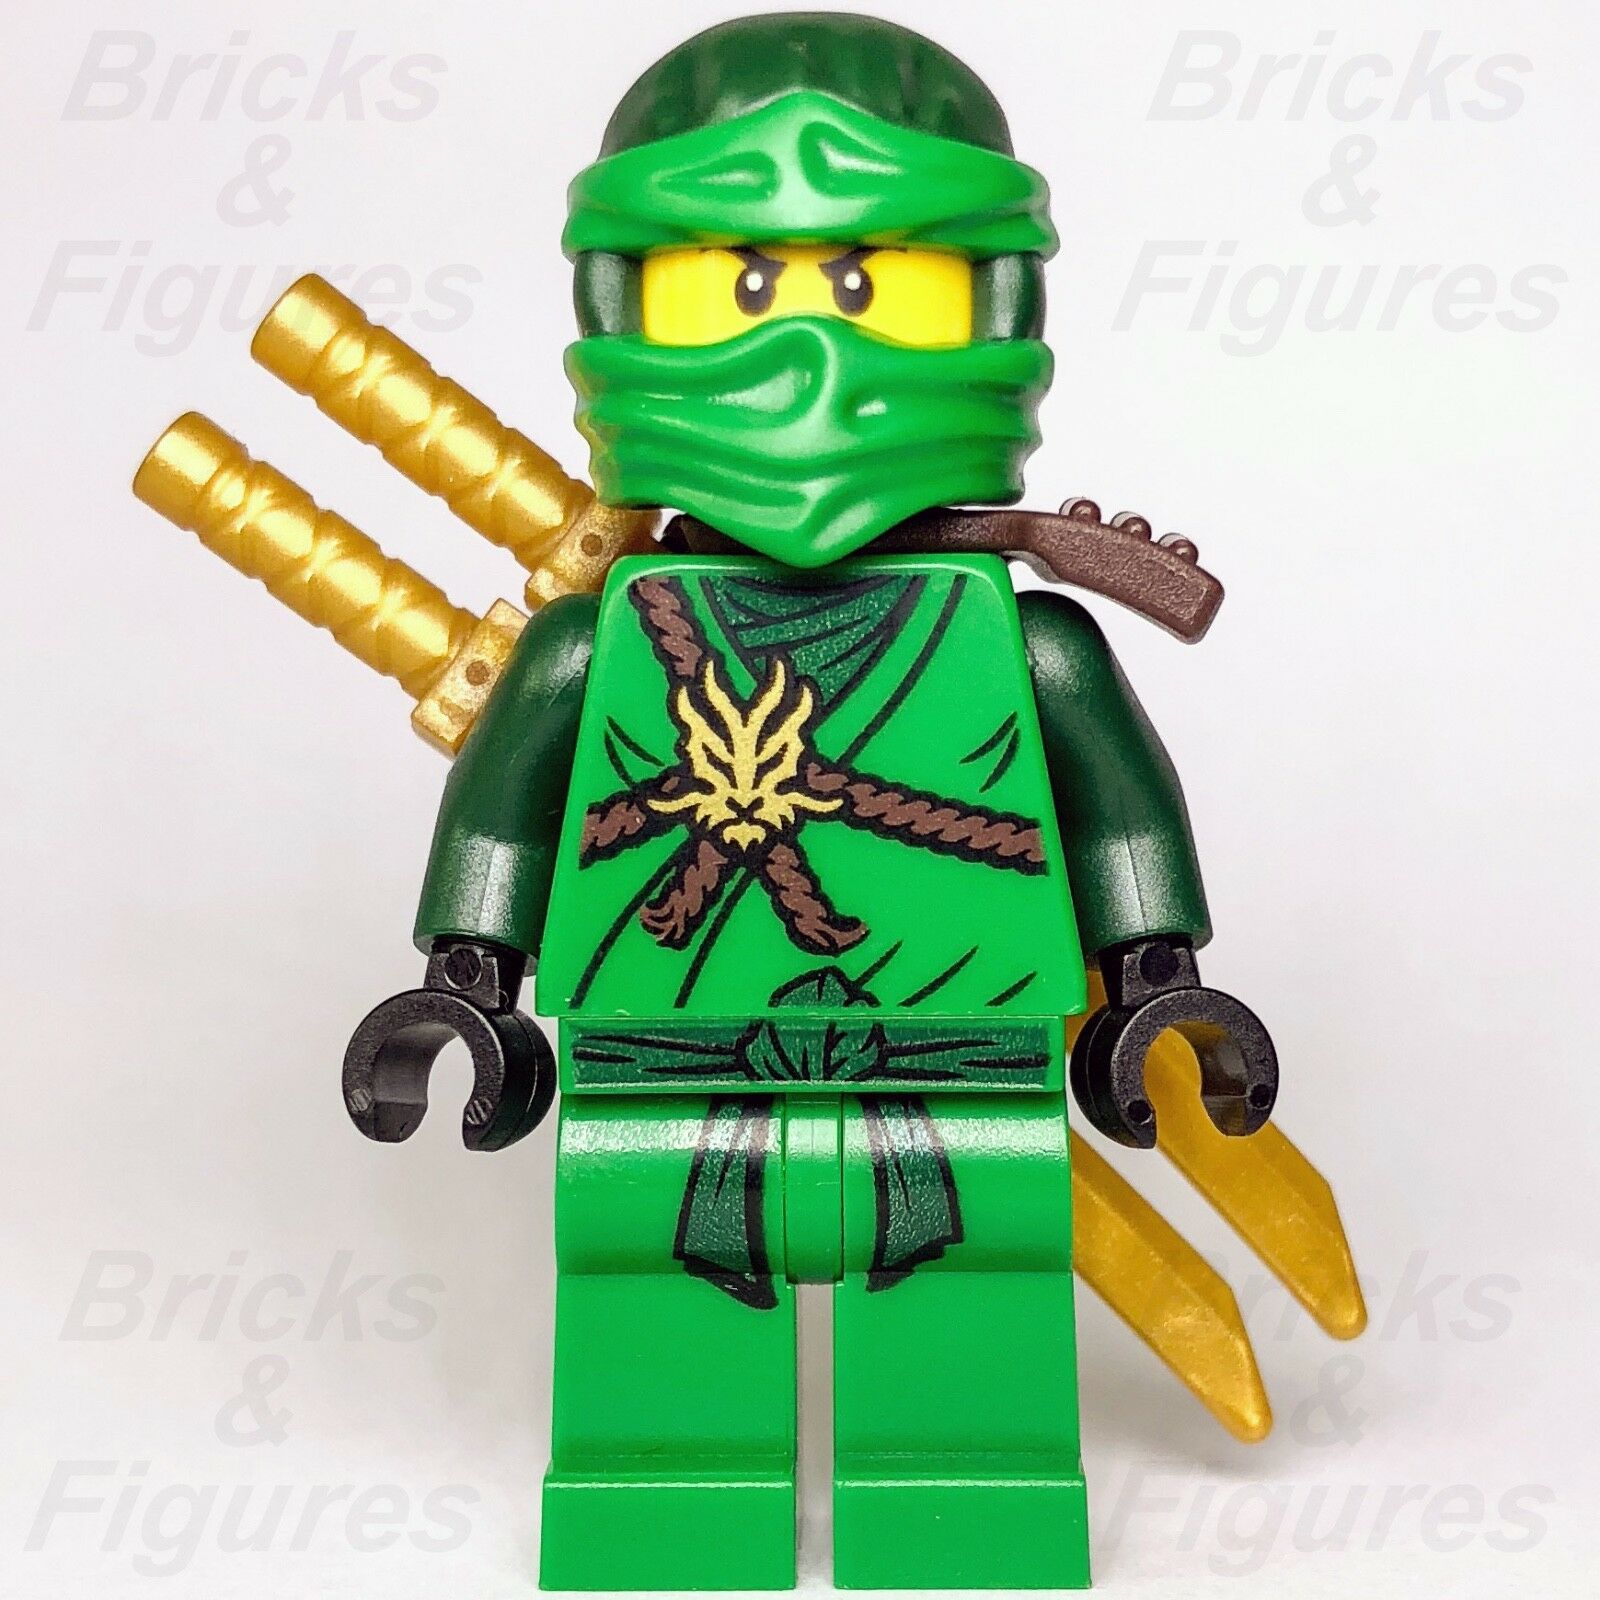 New Ninjago LEGO Lloyd Garmadon Ninja Day of the Departed Minifigure 70596 - Bricks & Figures